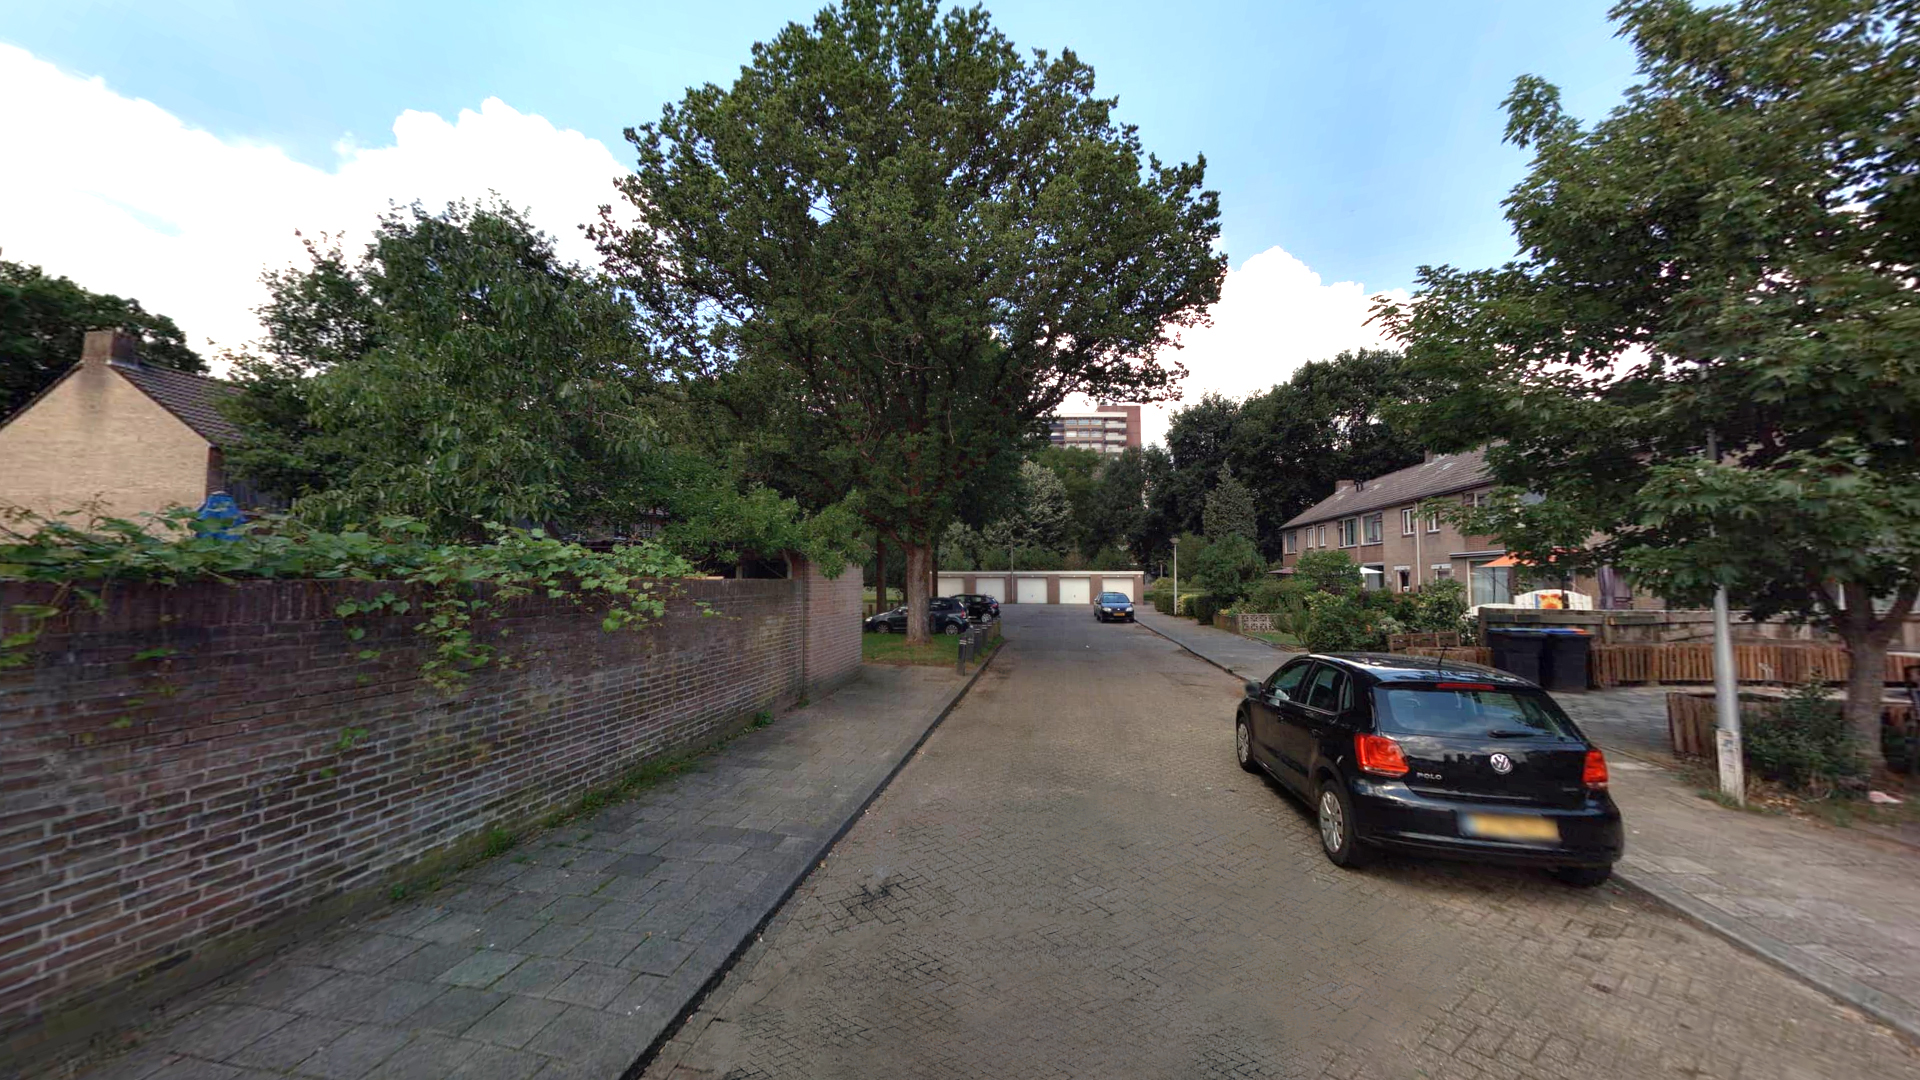 Foto van huidige situatie Dovenetelhof: straat met geparkeerde auto's en bomen